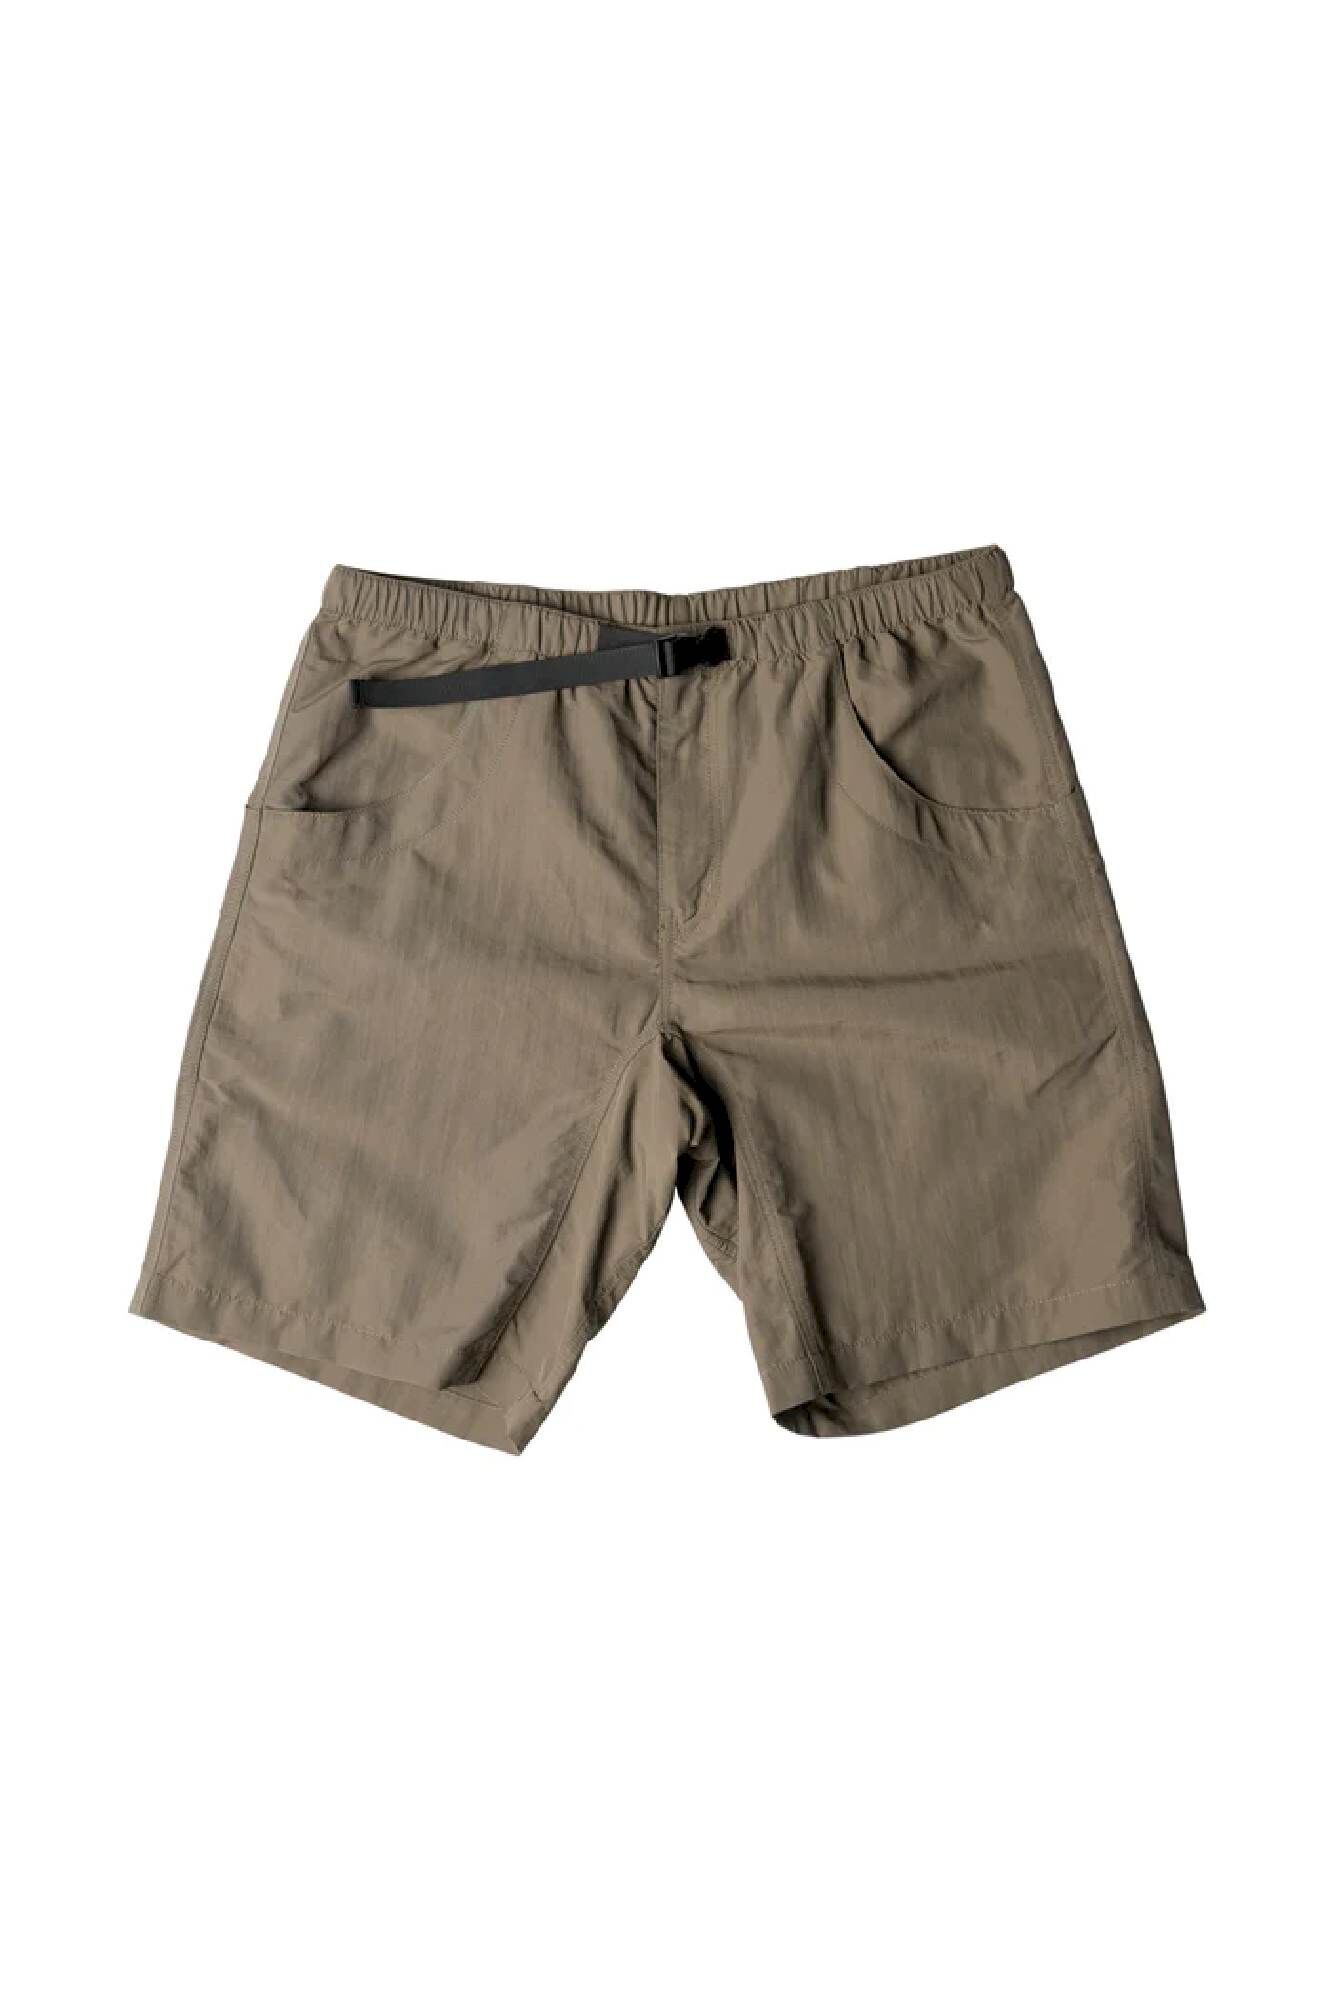 Kavu Big Eddy Short - Walking shorts - Men's | Hardloop